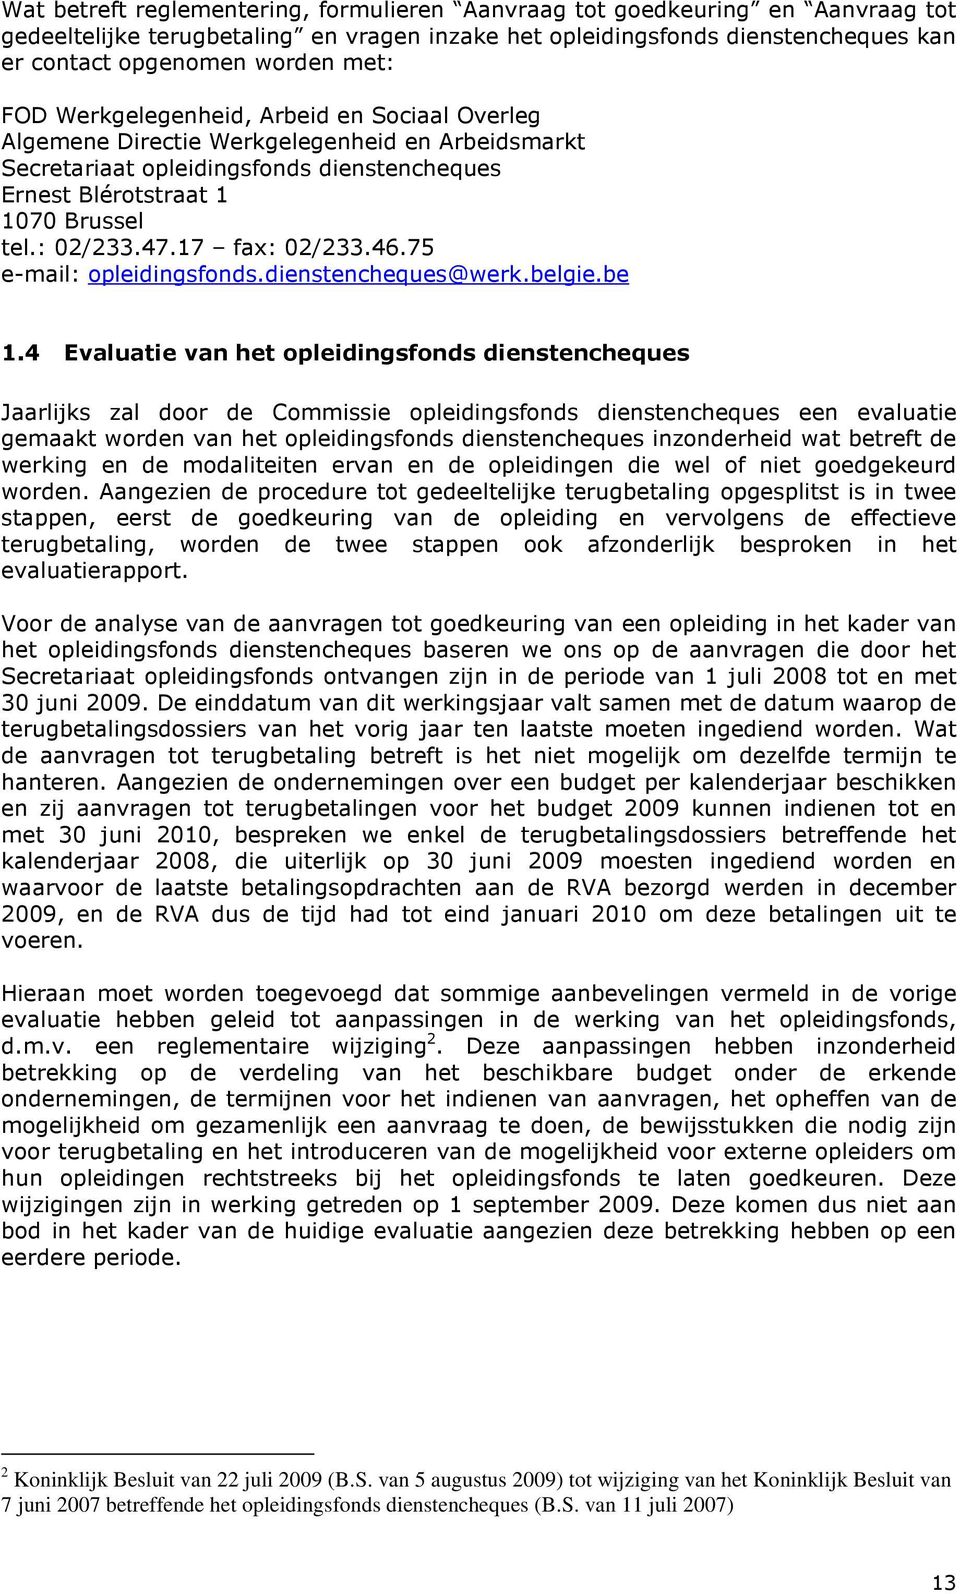 17 fax: 02/233.46.75 e-mail: opleidingsfonds.dienstencheques@werk.belgie.be 1.